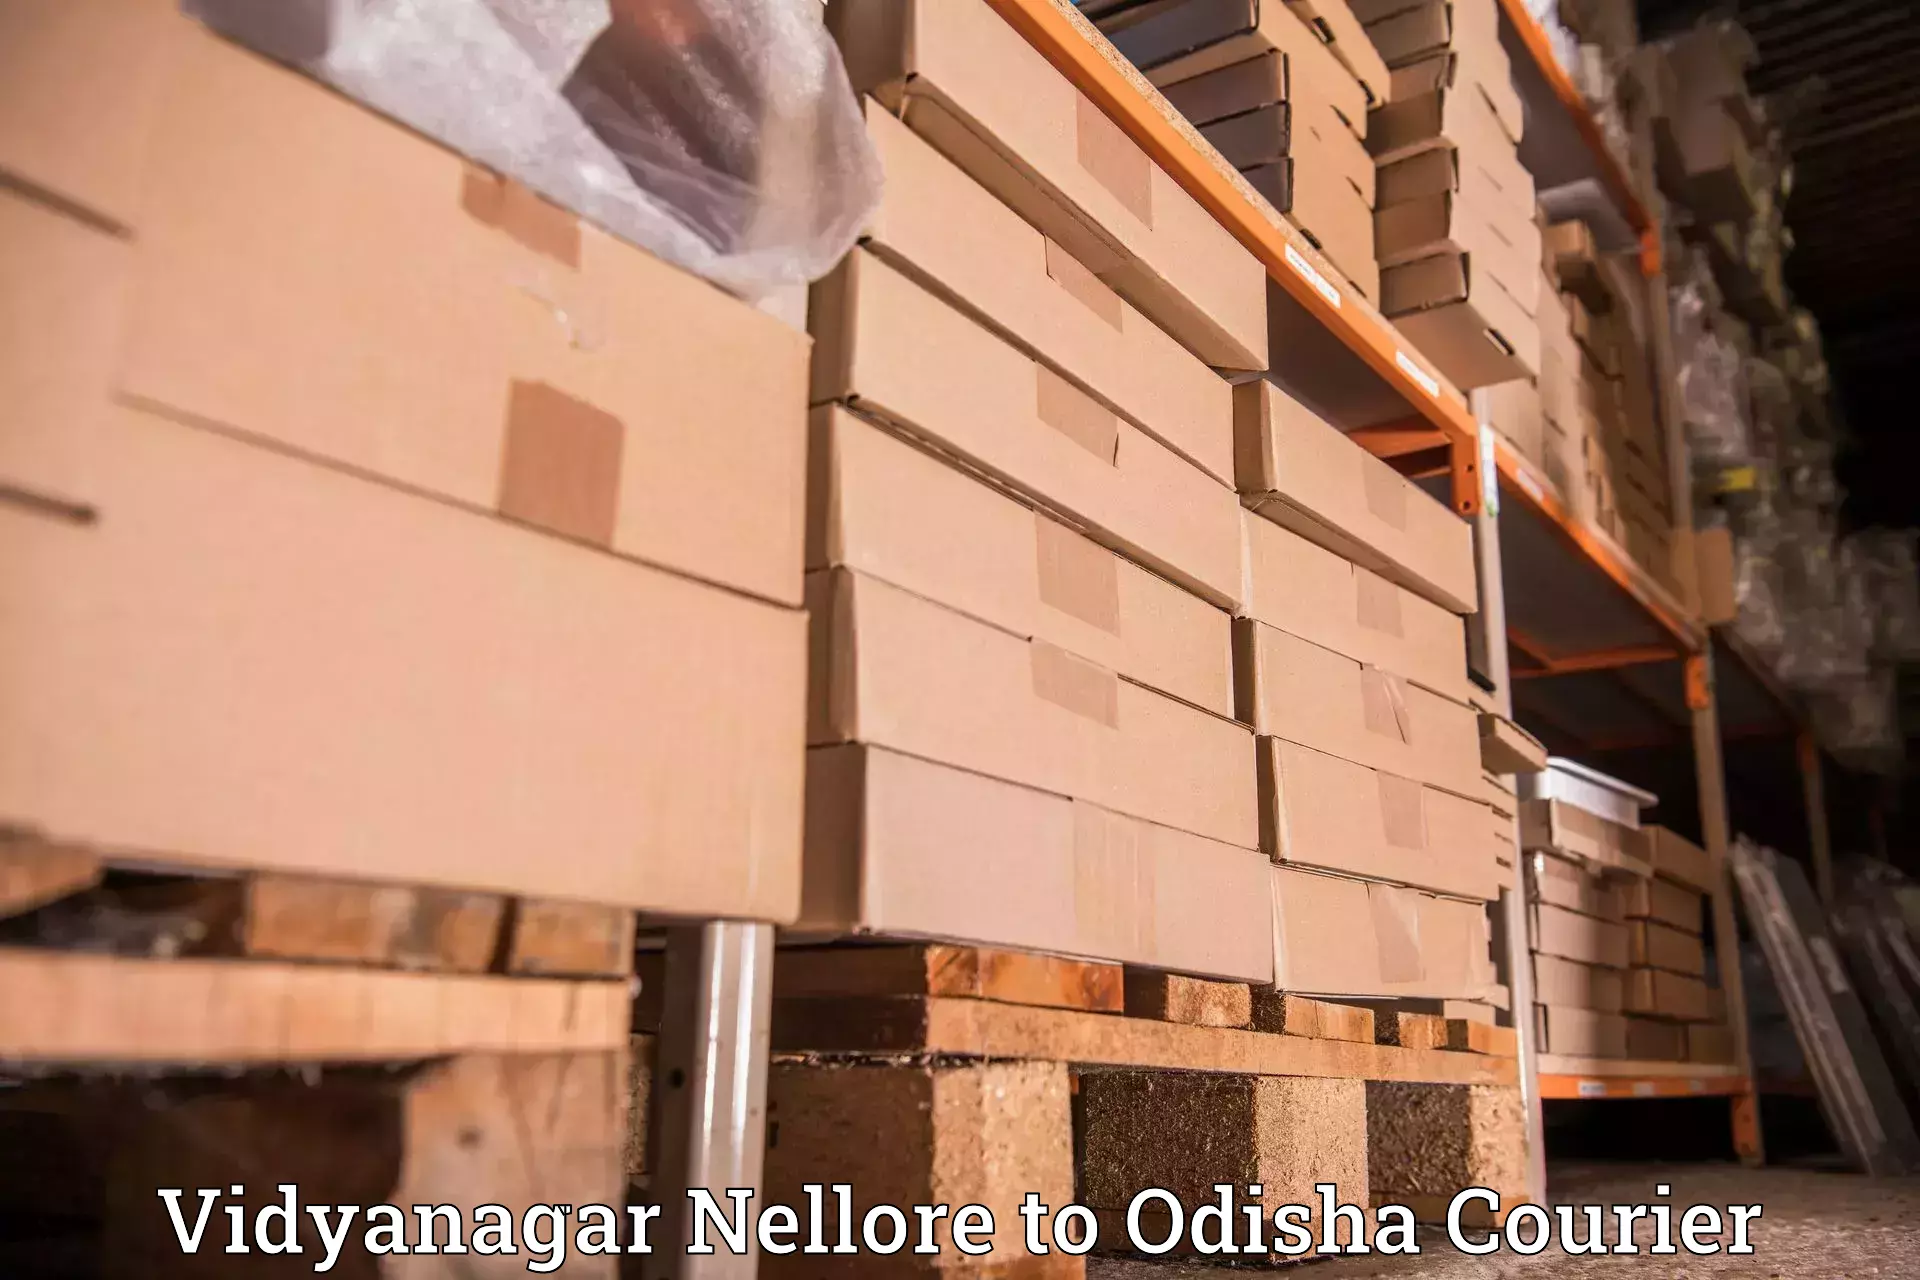 Customer-oriented courier services Vidyanagar Nellore to Bhadrak